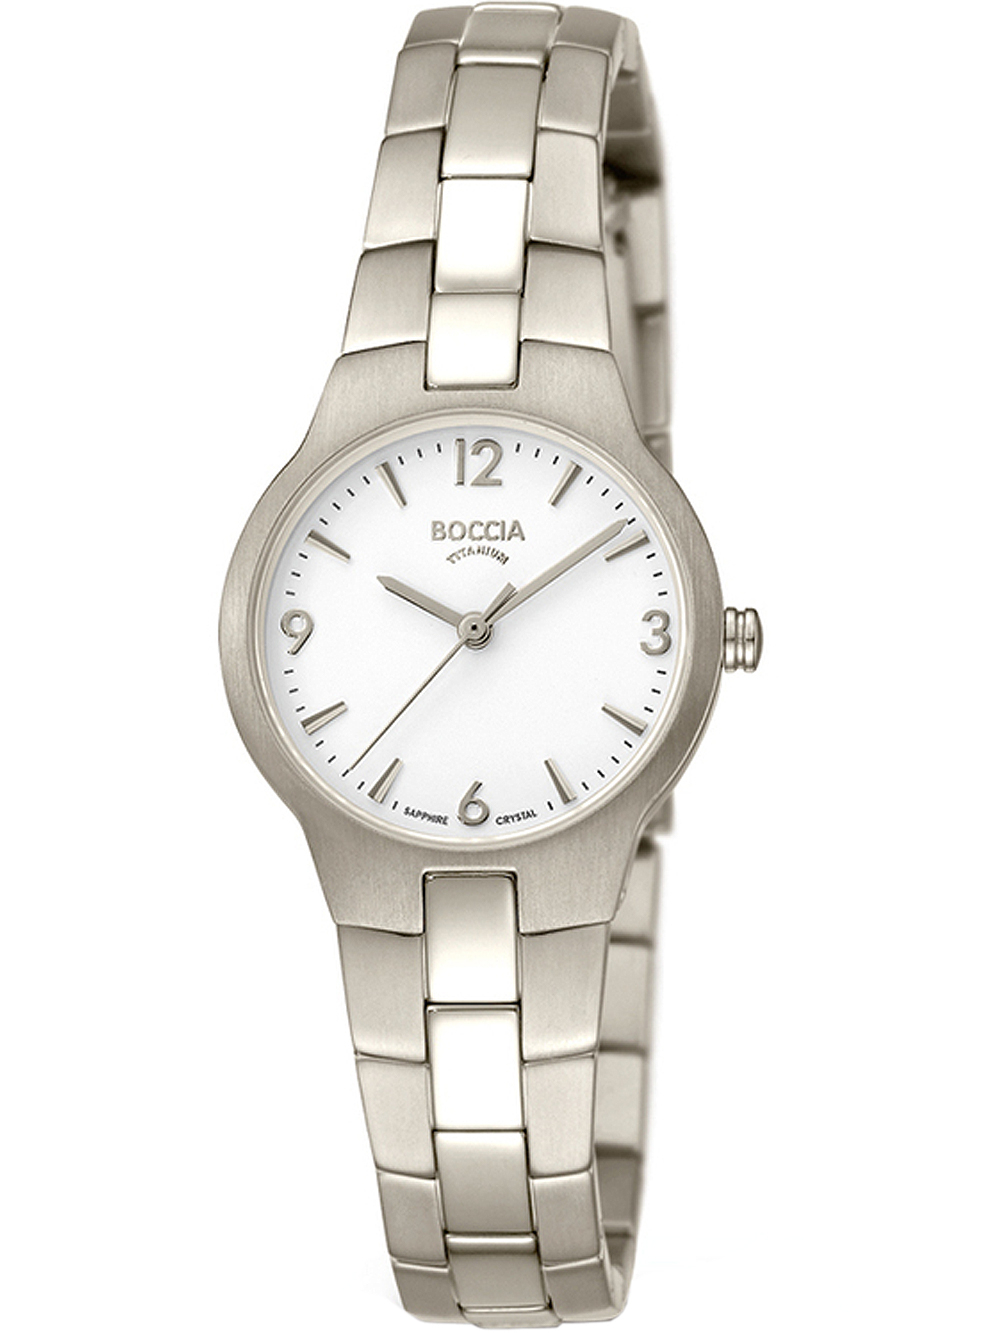 Dámské hodinky Boccia 3312-01 ladies watch titanium 29mm 5ATM